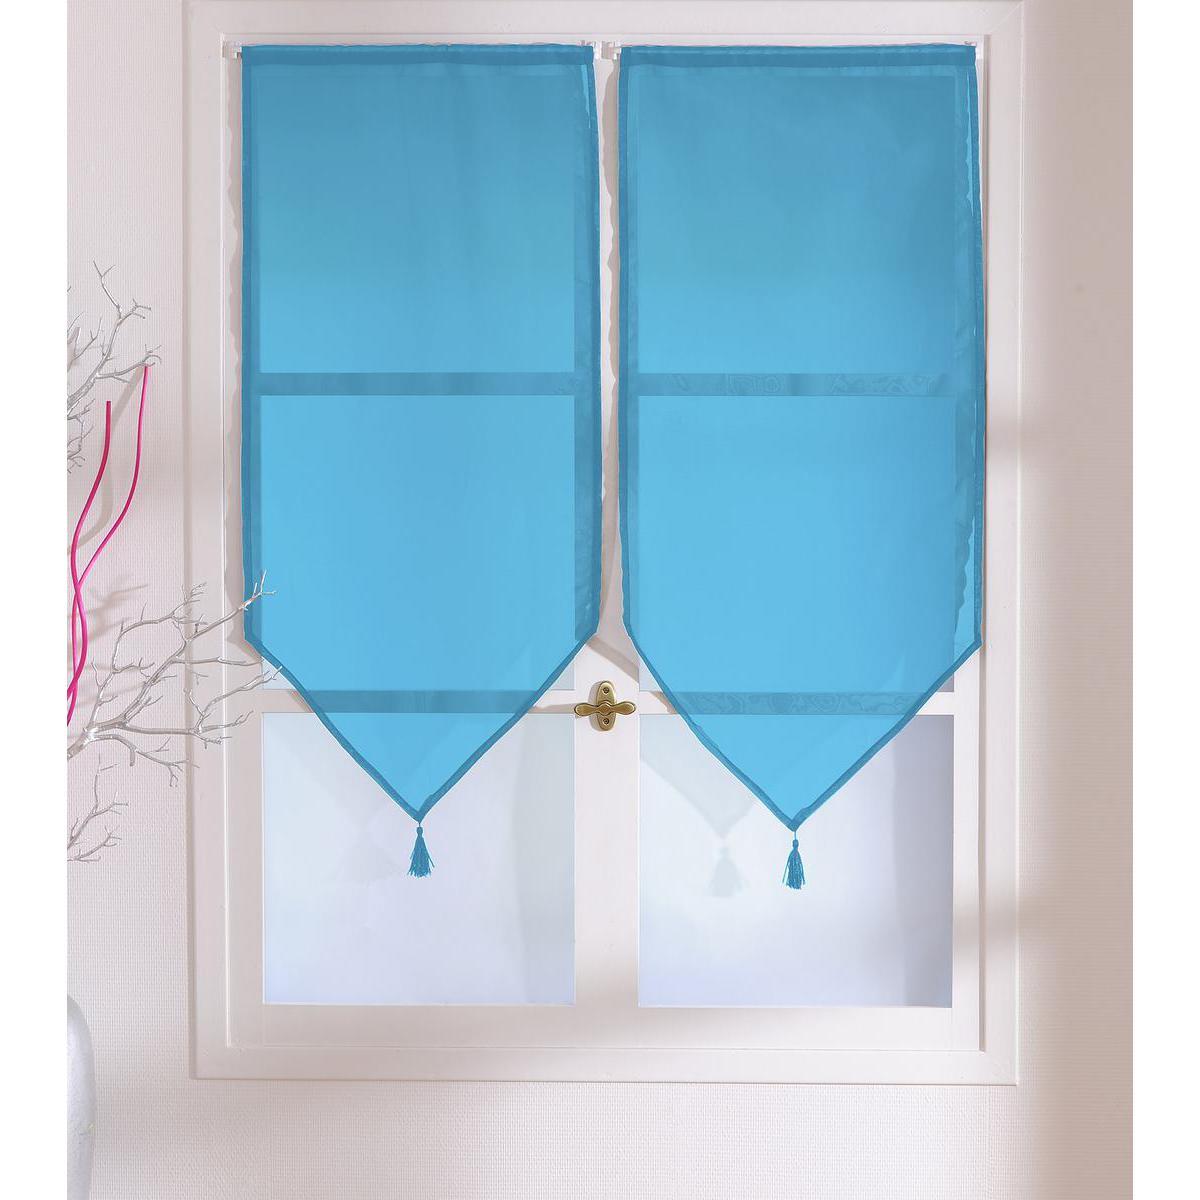 Paire de vitrages - 100% polyester - 60 x 120 cm - Bleu